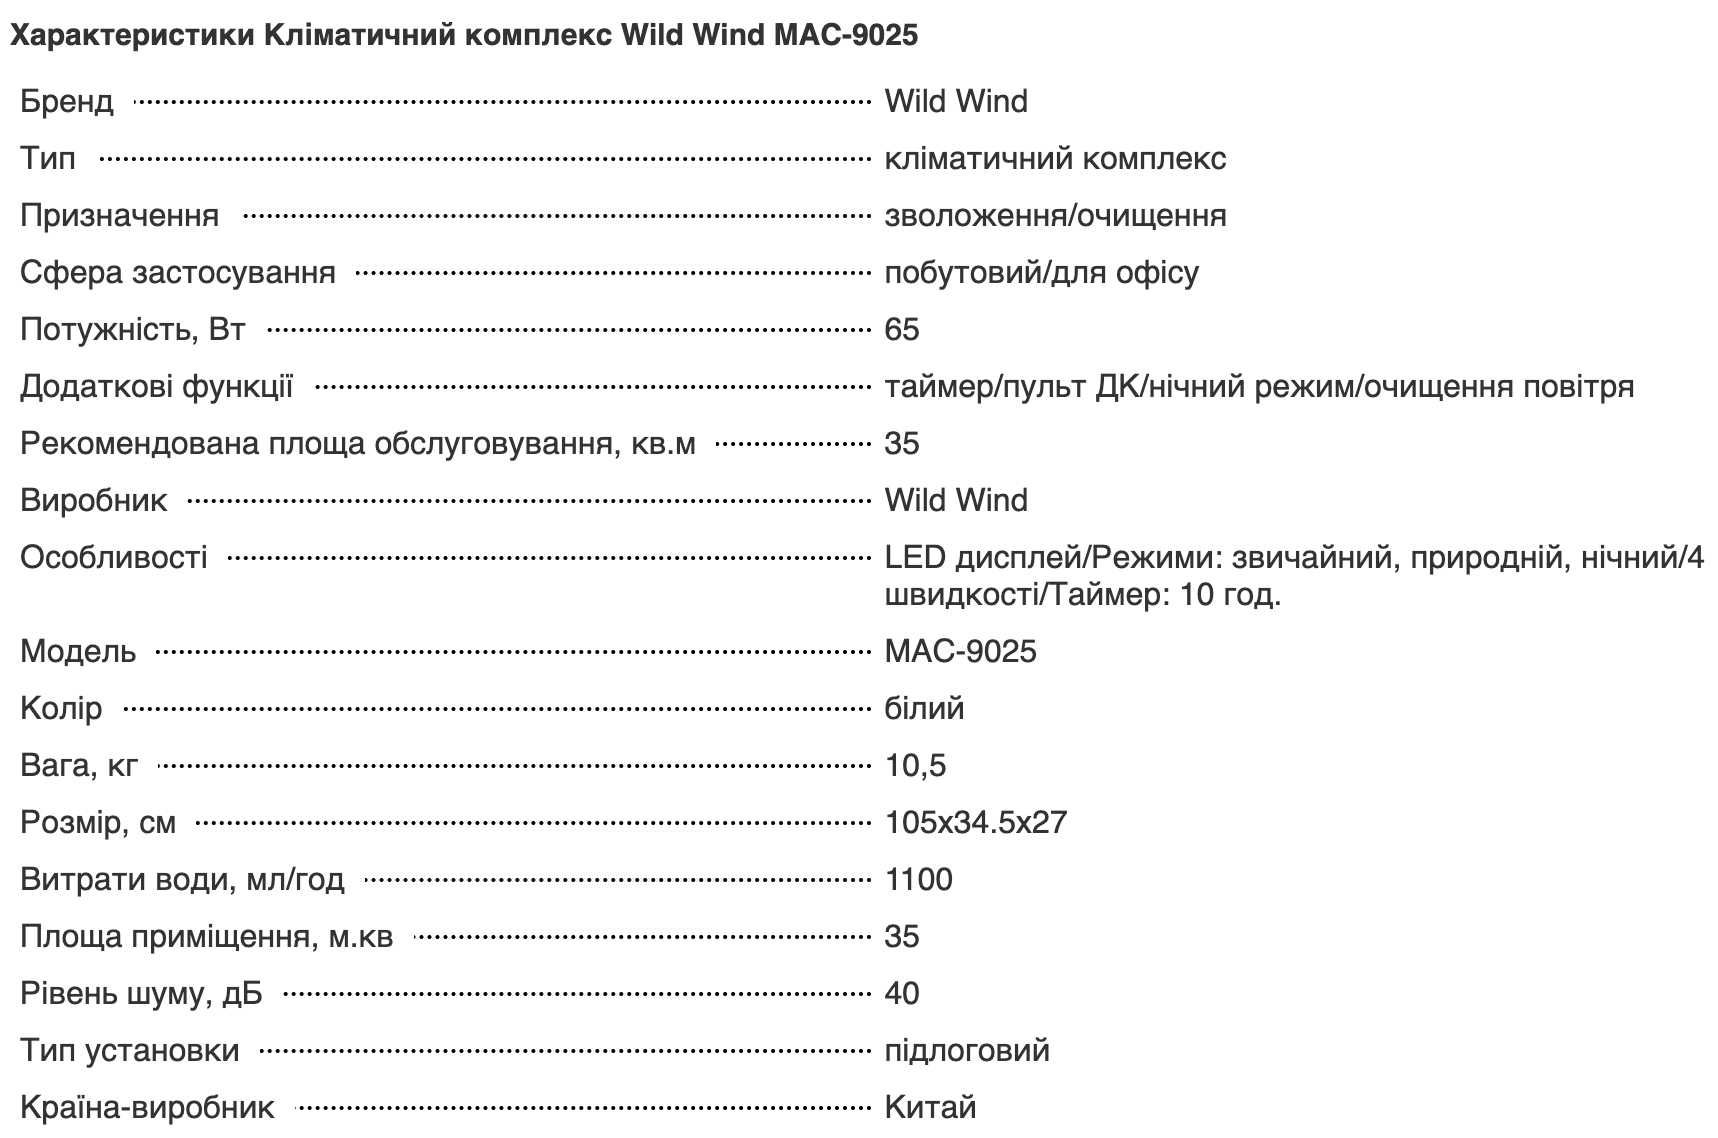 Кліматичний комплекс Wild Wind MAC-9025